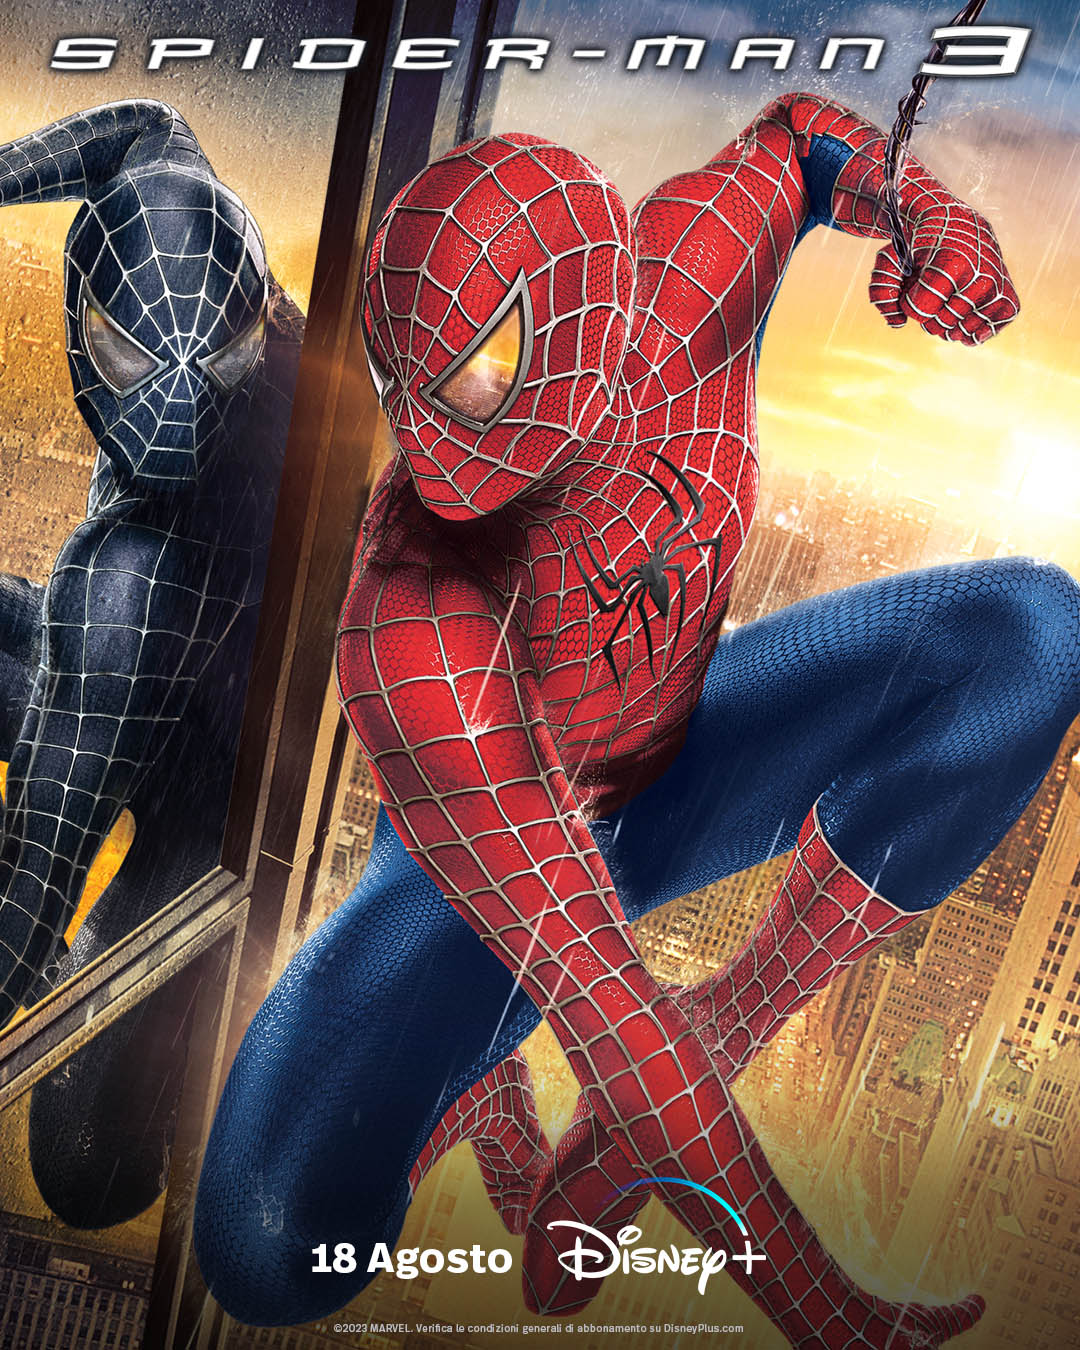 Spider-Man 3 (2007) - Poster Disney+